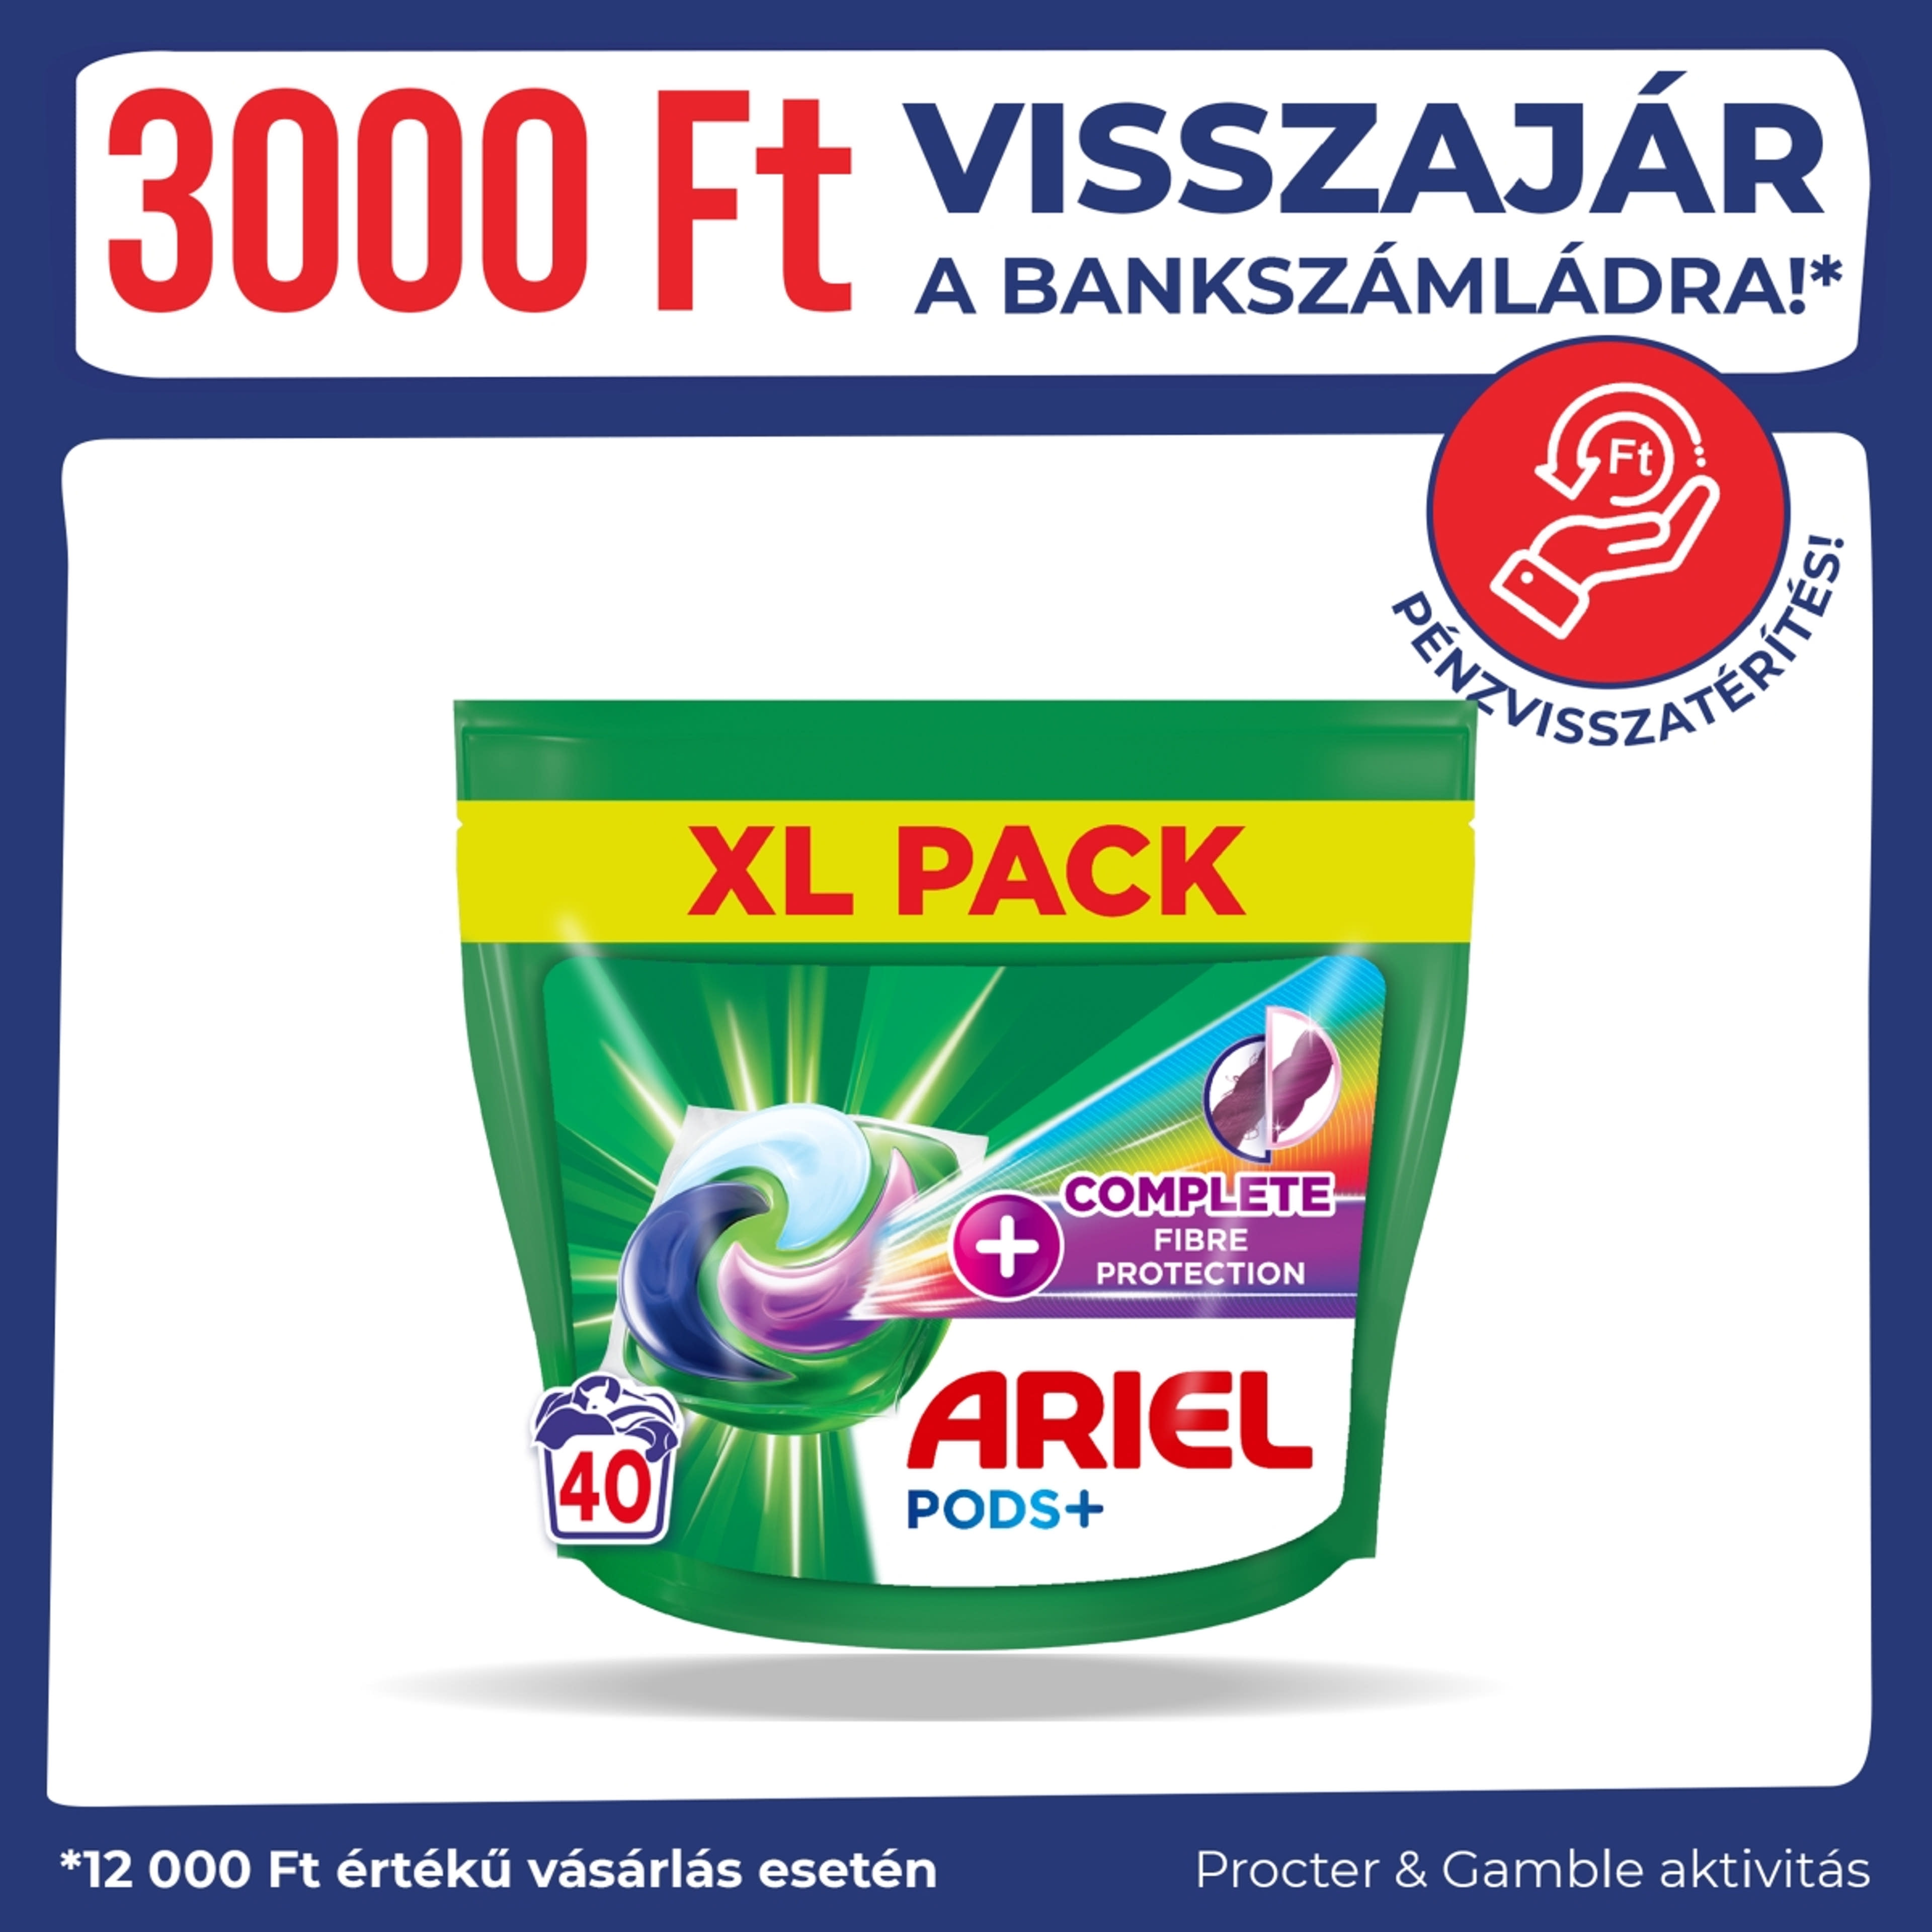 Ariel All-in-1 PODS mosókapszula - 40 db